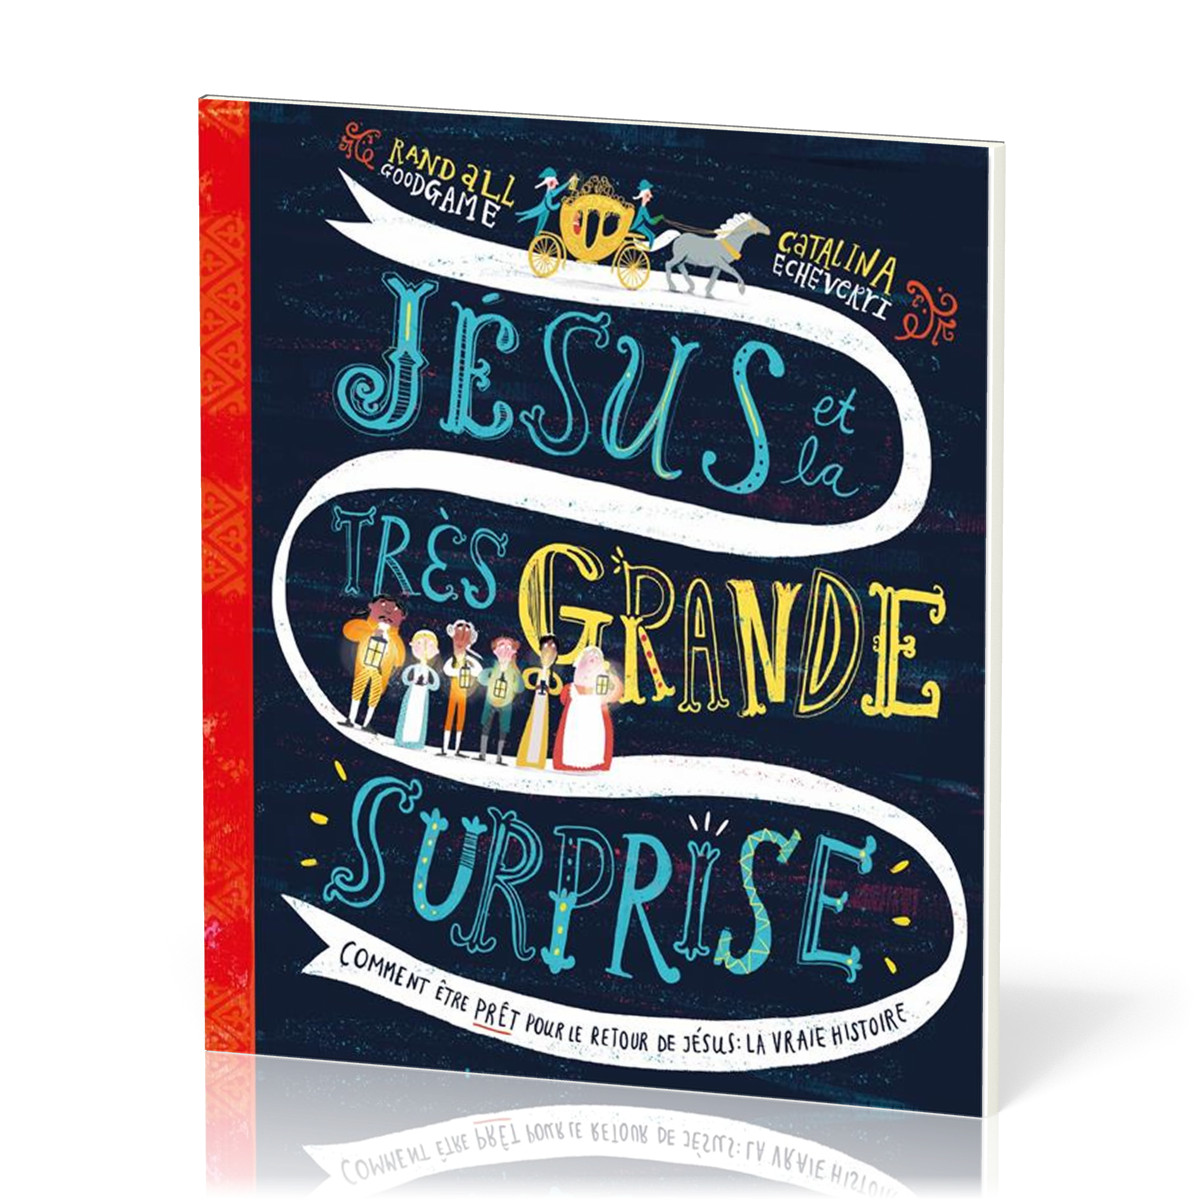 Jésus et la très grande surprise - Comment être prêt pour le retour de Jésus : la vraie histoire